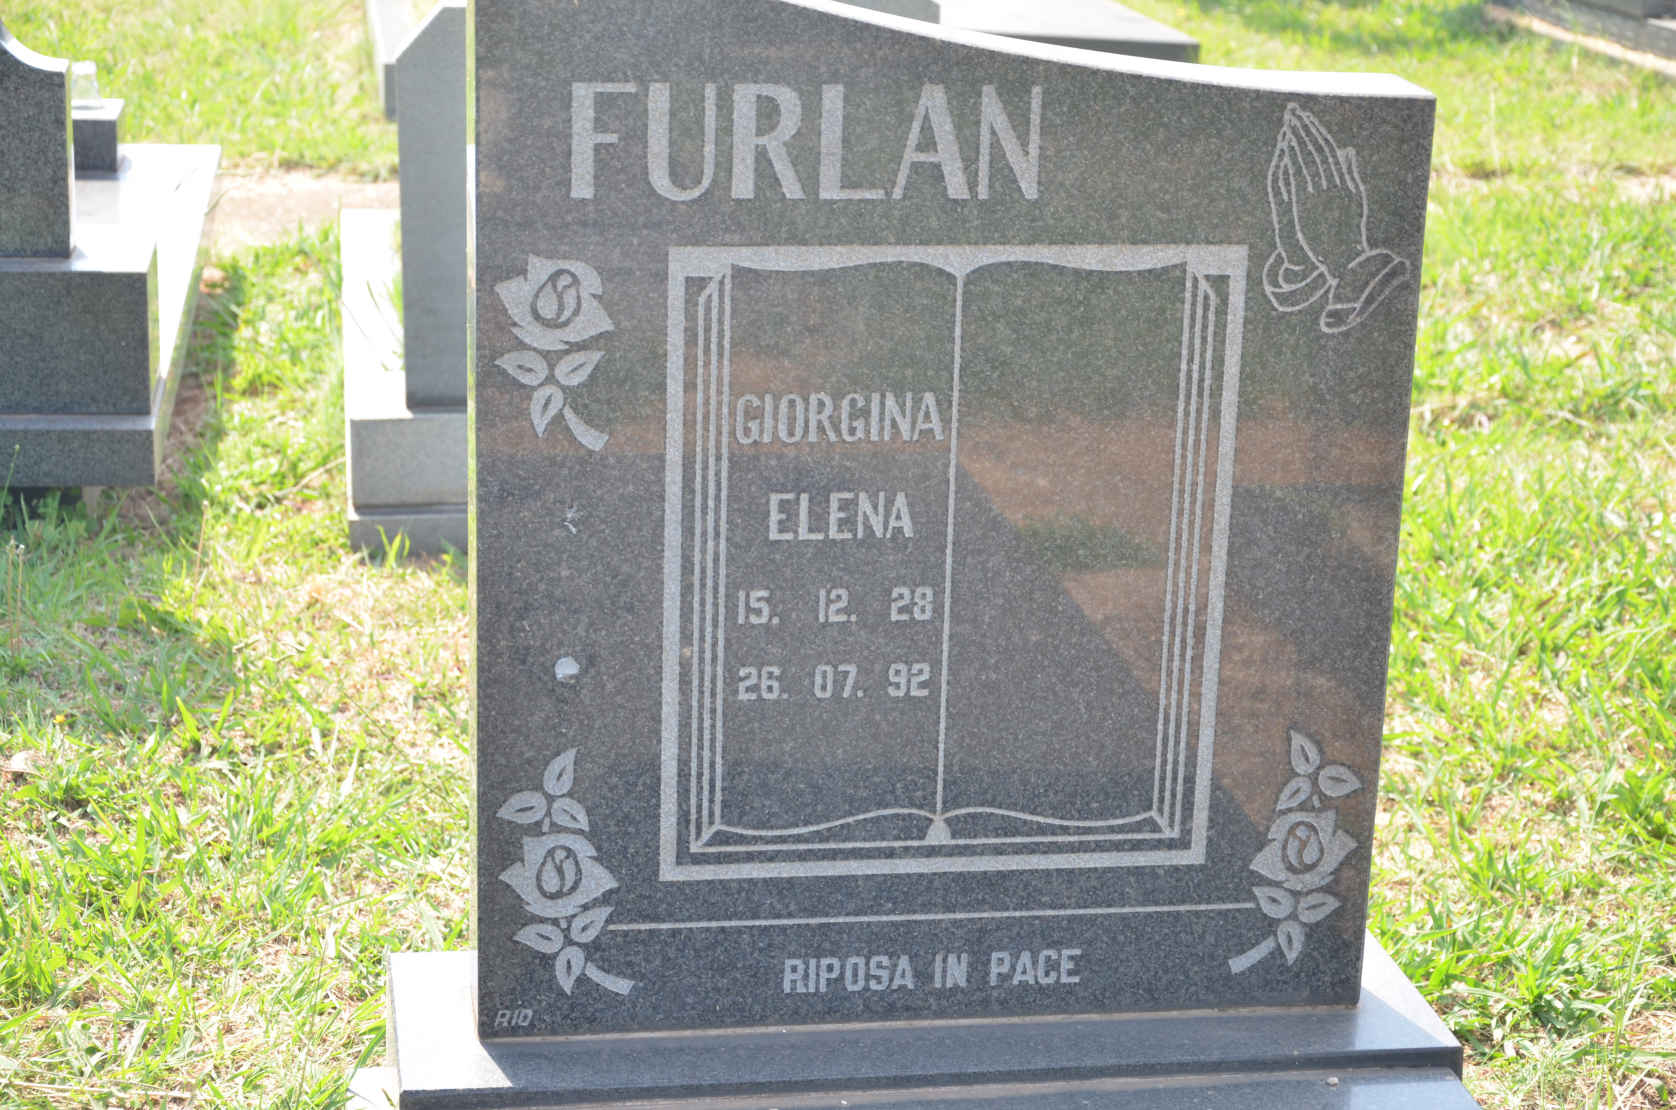 FURLAN Giorgina Elena 1928-1992